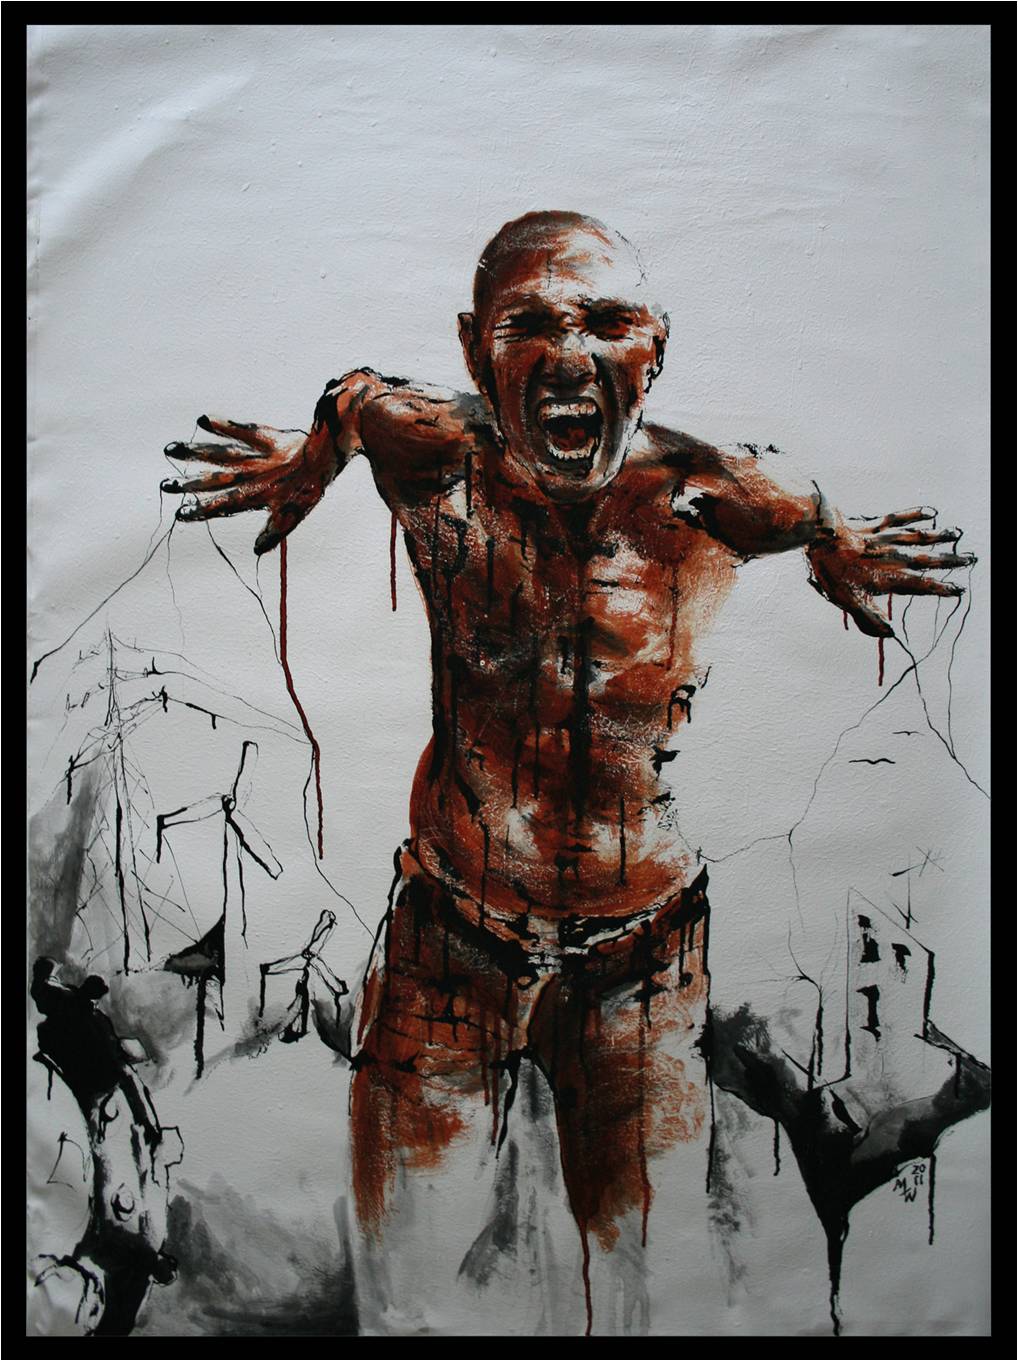 Nachhaltiger Schrei - 2010 (Tusche und Acryl auf Leinwand)
100 x 120 cm